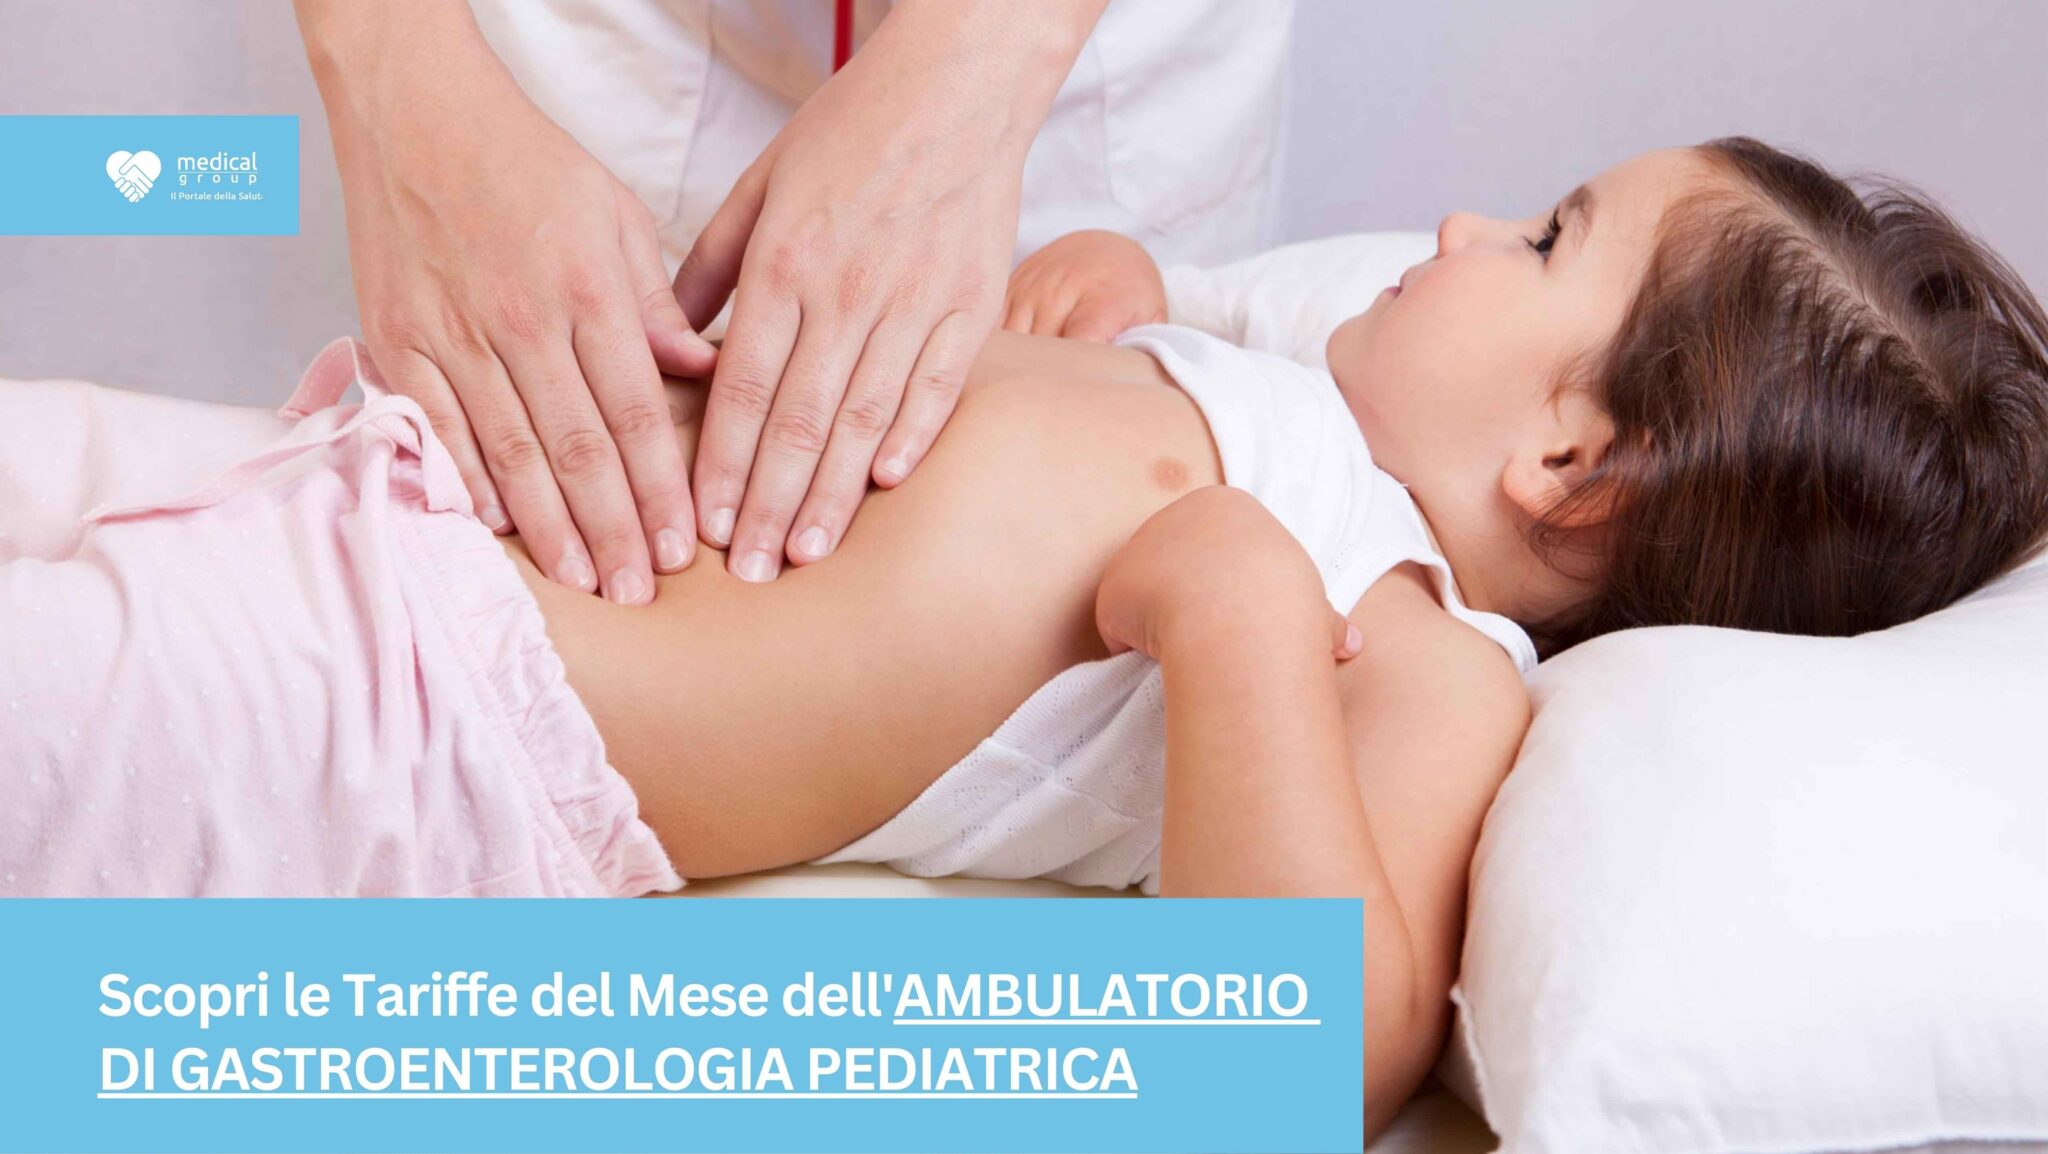 Tariffe del Mese Poliambulatorio Gastroenterologia Pediatrica F-Medical Frosinone_13_11zon